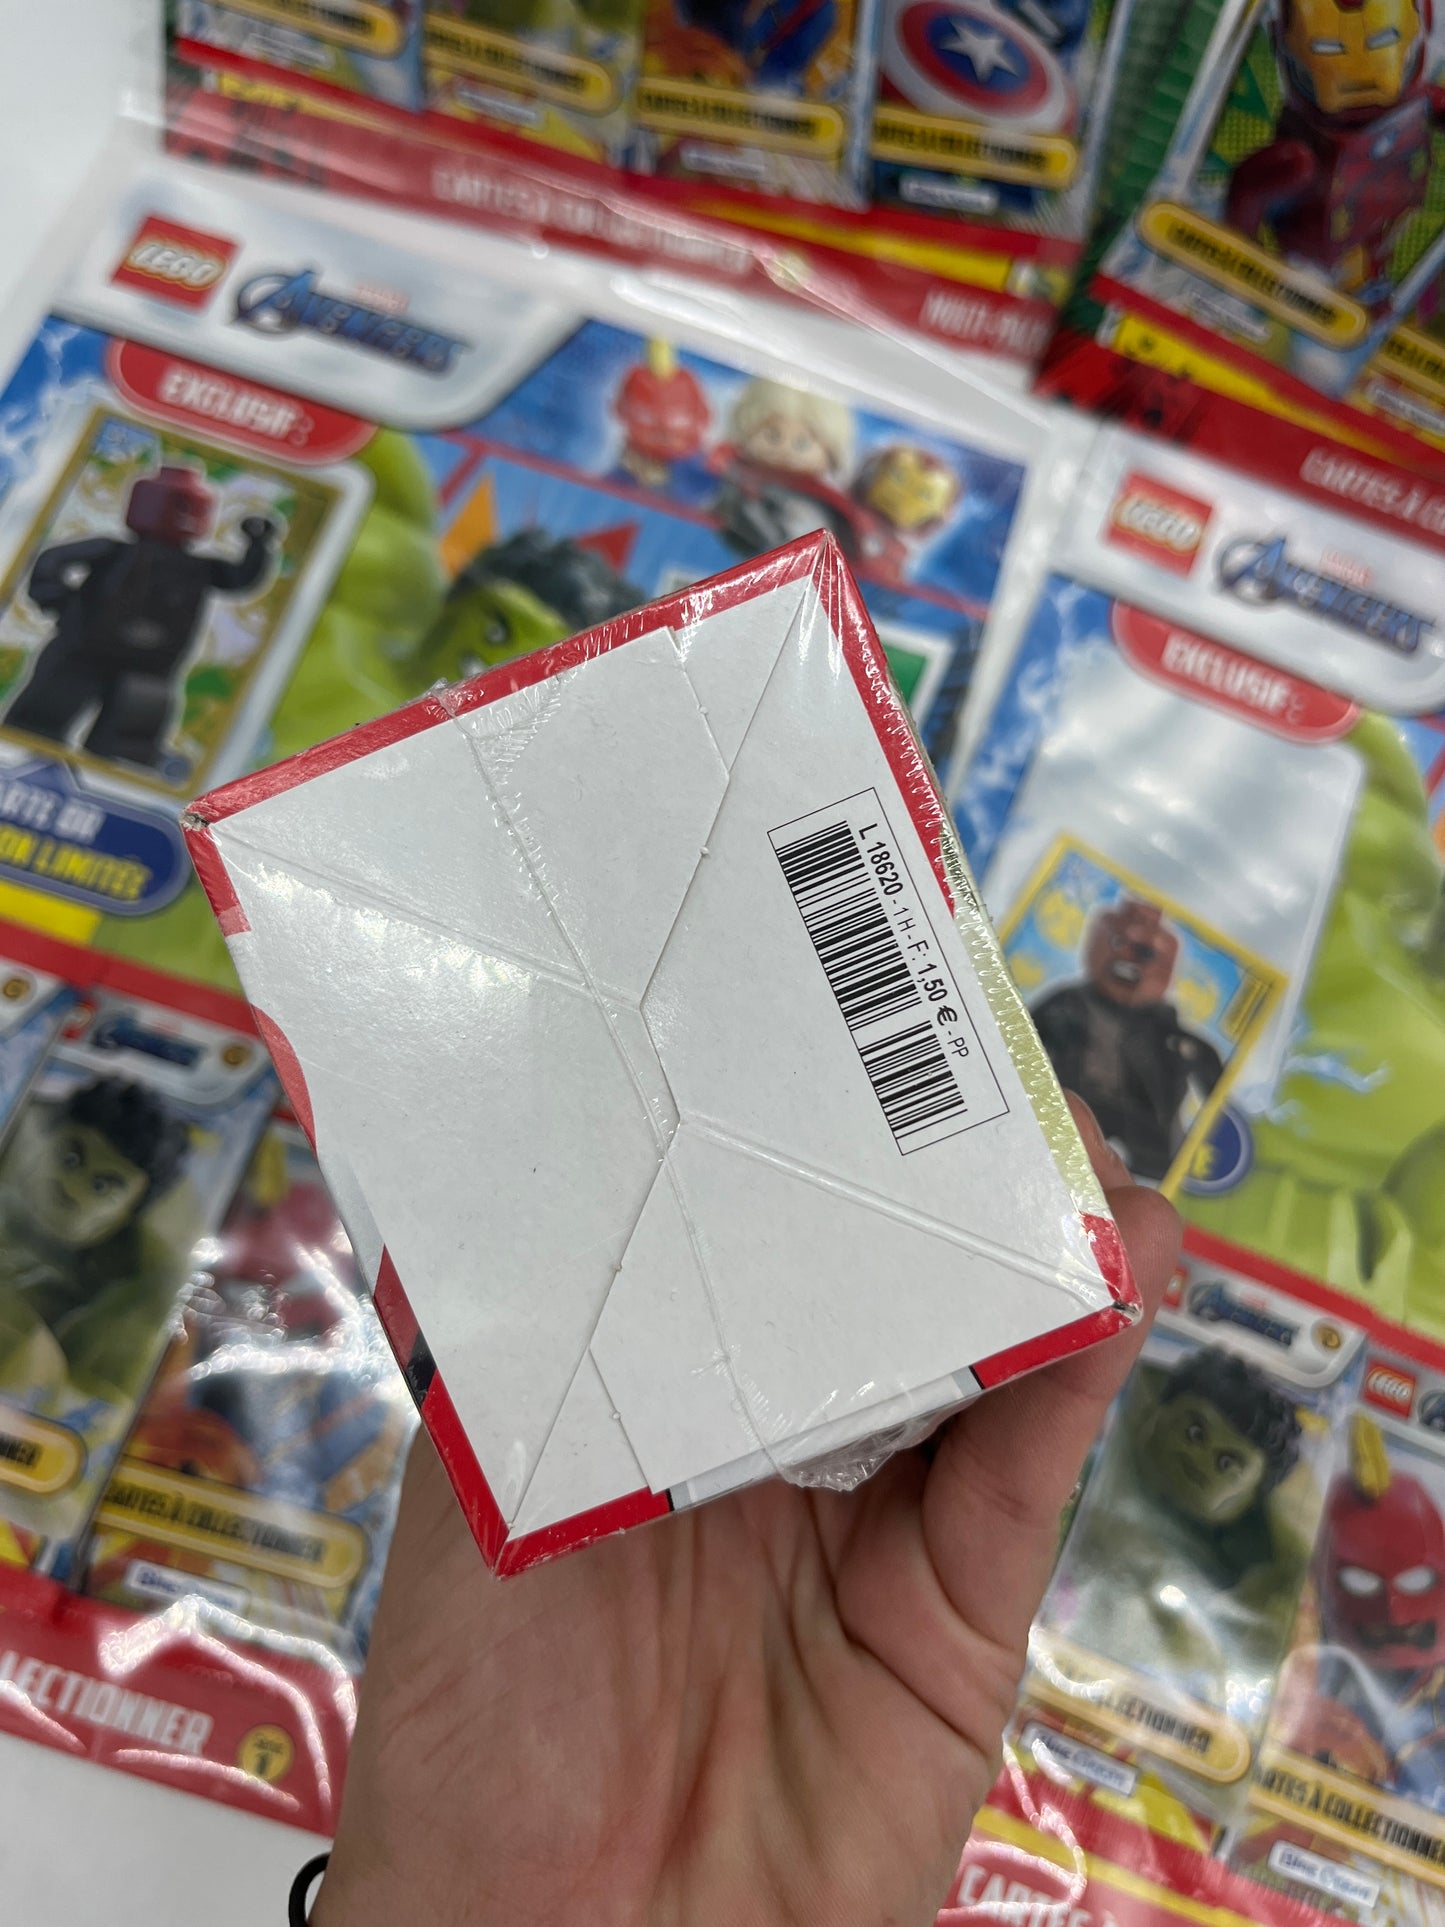 Lot de 4 Multipacks et un display de 25 pochettes de 5 cartes Lego Marvel Avenger Stickers avec carte édition limitée Neuf sous blister